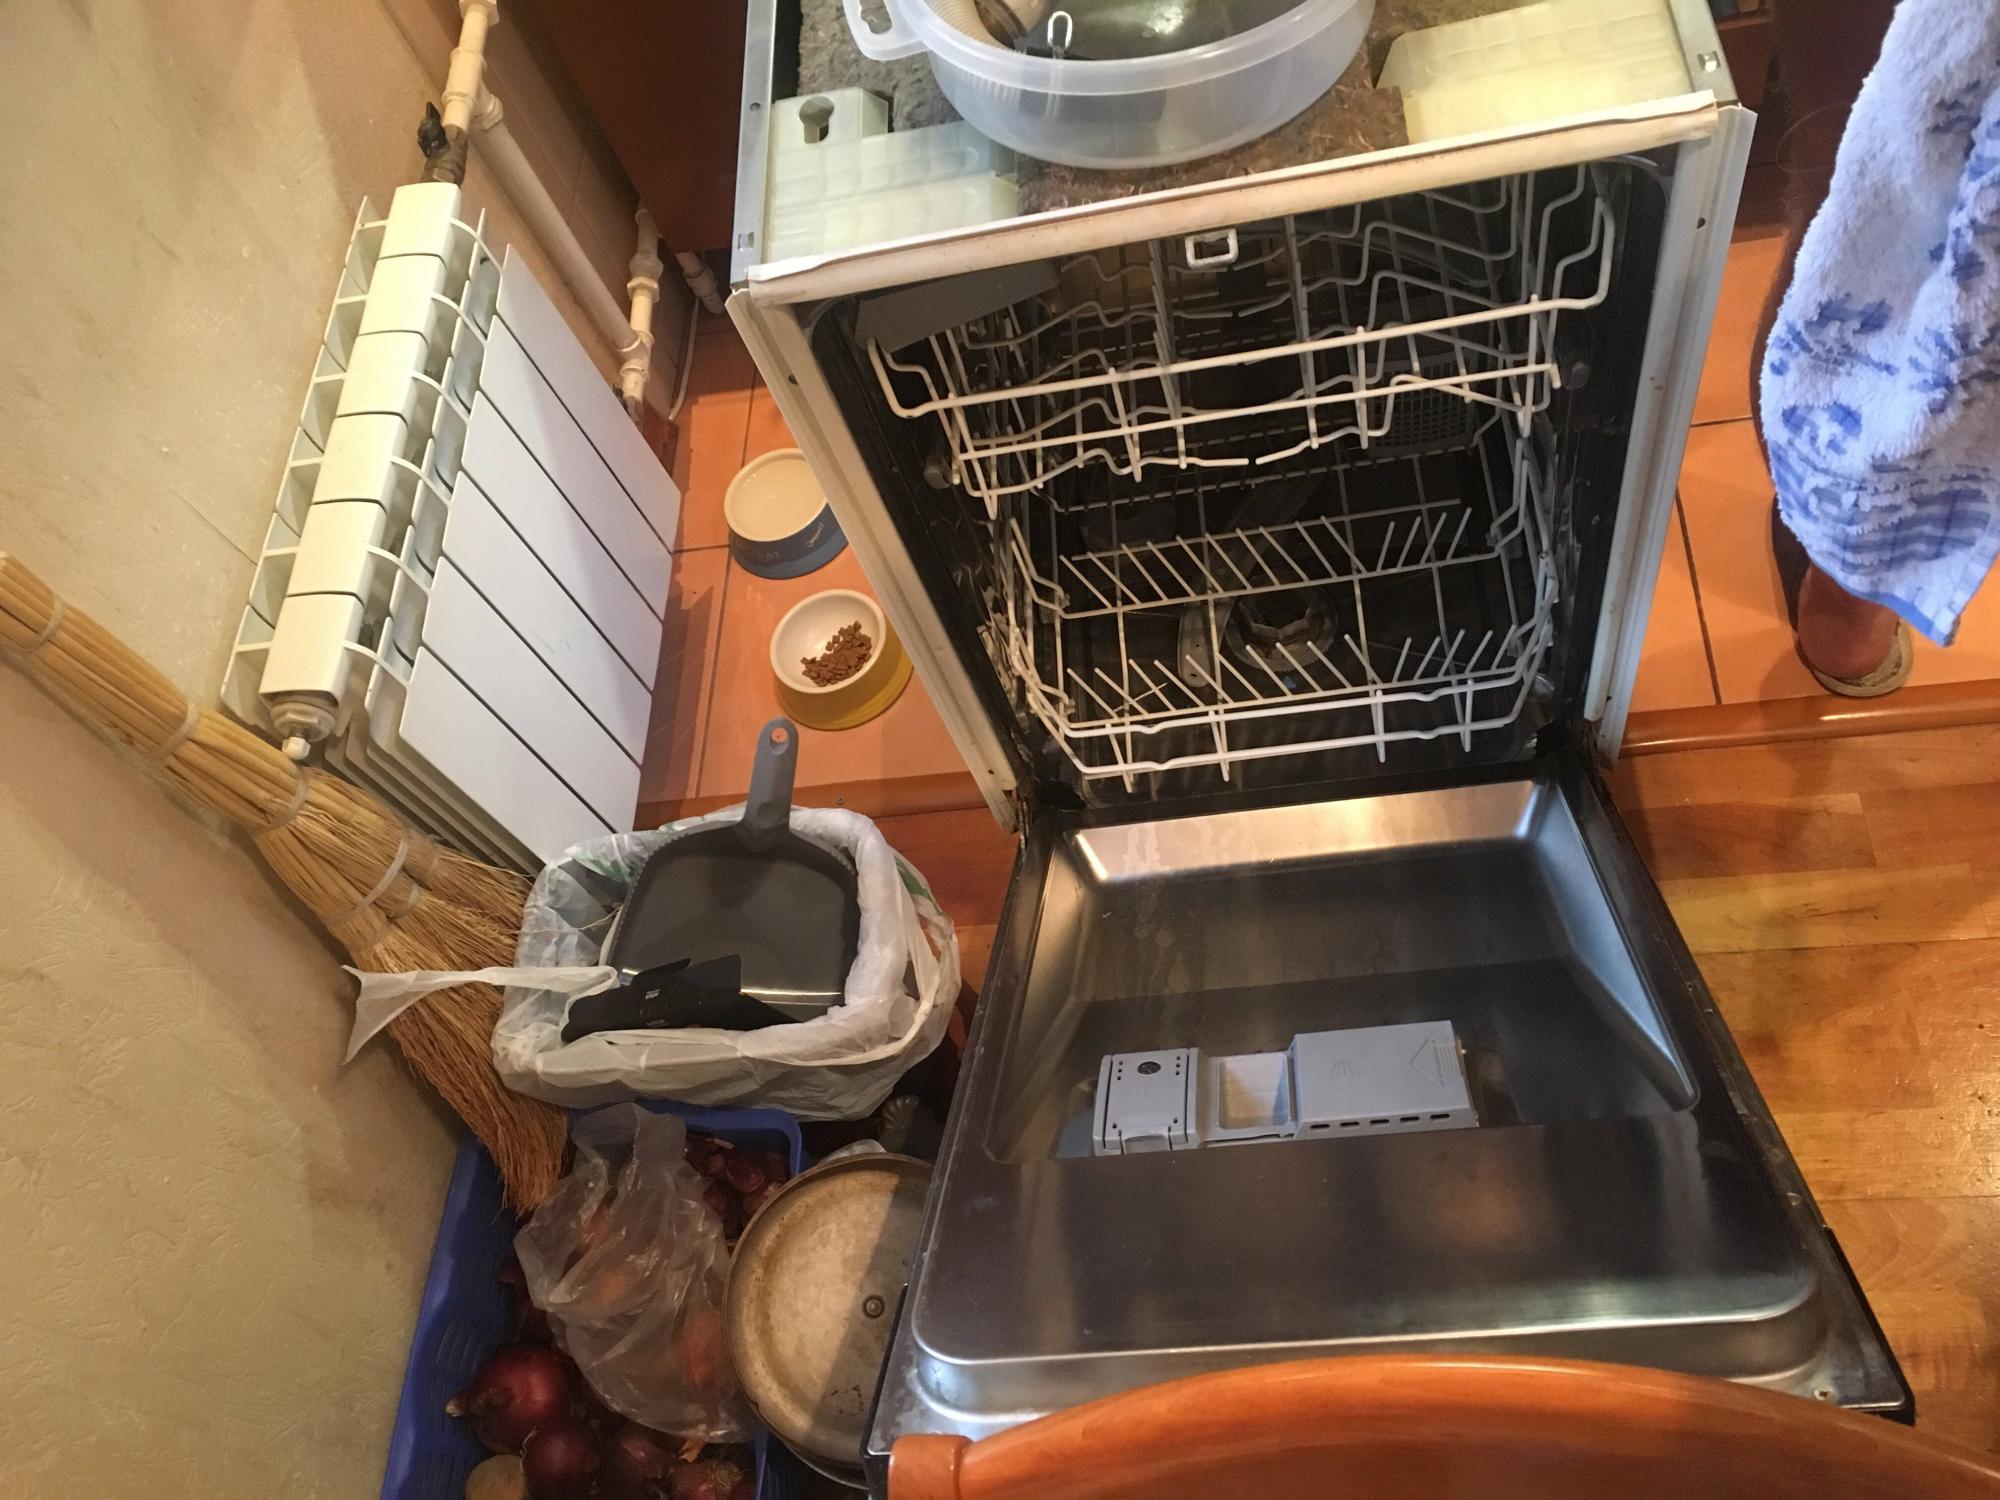 Какие посудомоечные машины хорошие по качеству. Посудомойка 45 или 60 см. Телевизор больше посудомойки. Екsi посудомоющая машина 750wdd. Различия посудомойки на 60 и 45.